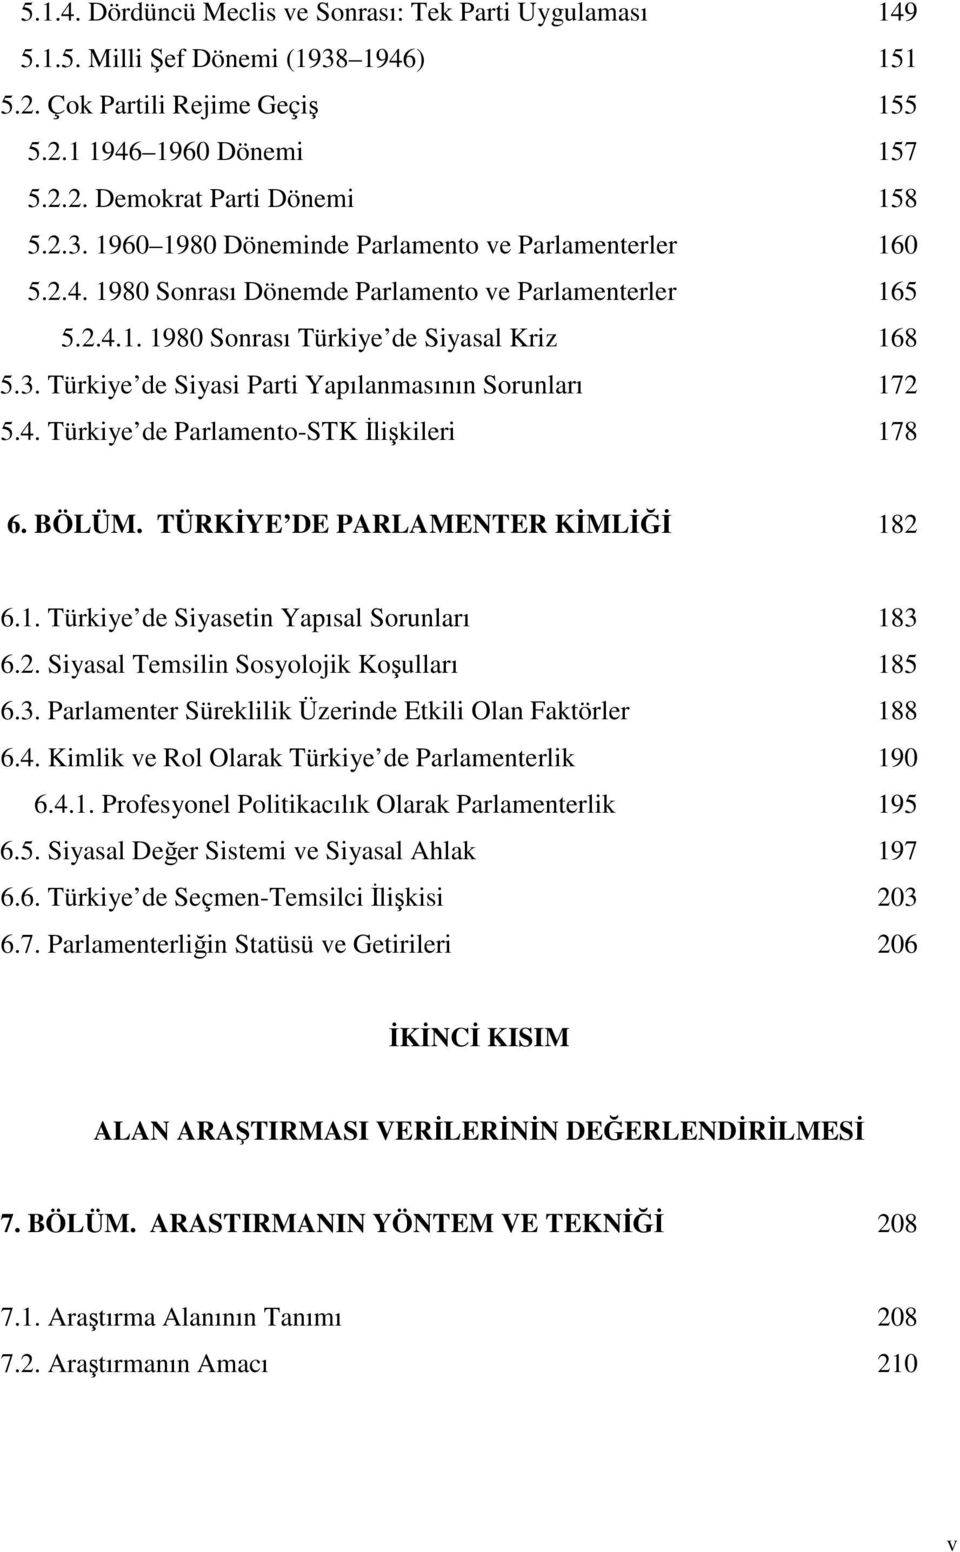 BÖLÜM. TÜRKYE DE PARLAMENTER KML 182 6.1. Türkiye de Siyasetin Yapısal Sorunları 183 6.2. Siyasal Temsilin Sosyolojik Koulları 185 6.3. Parlamenter Süreklilik Üzerinde Etkili Olan Faktörler 188 6.4.